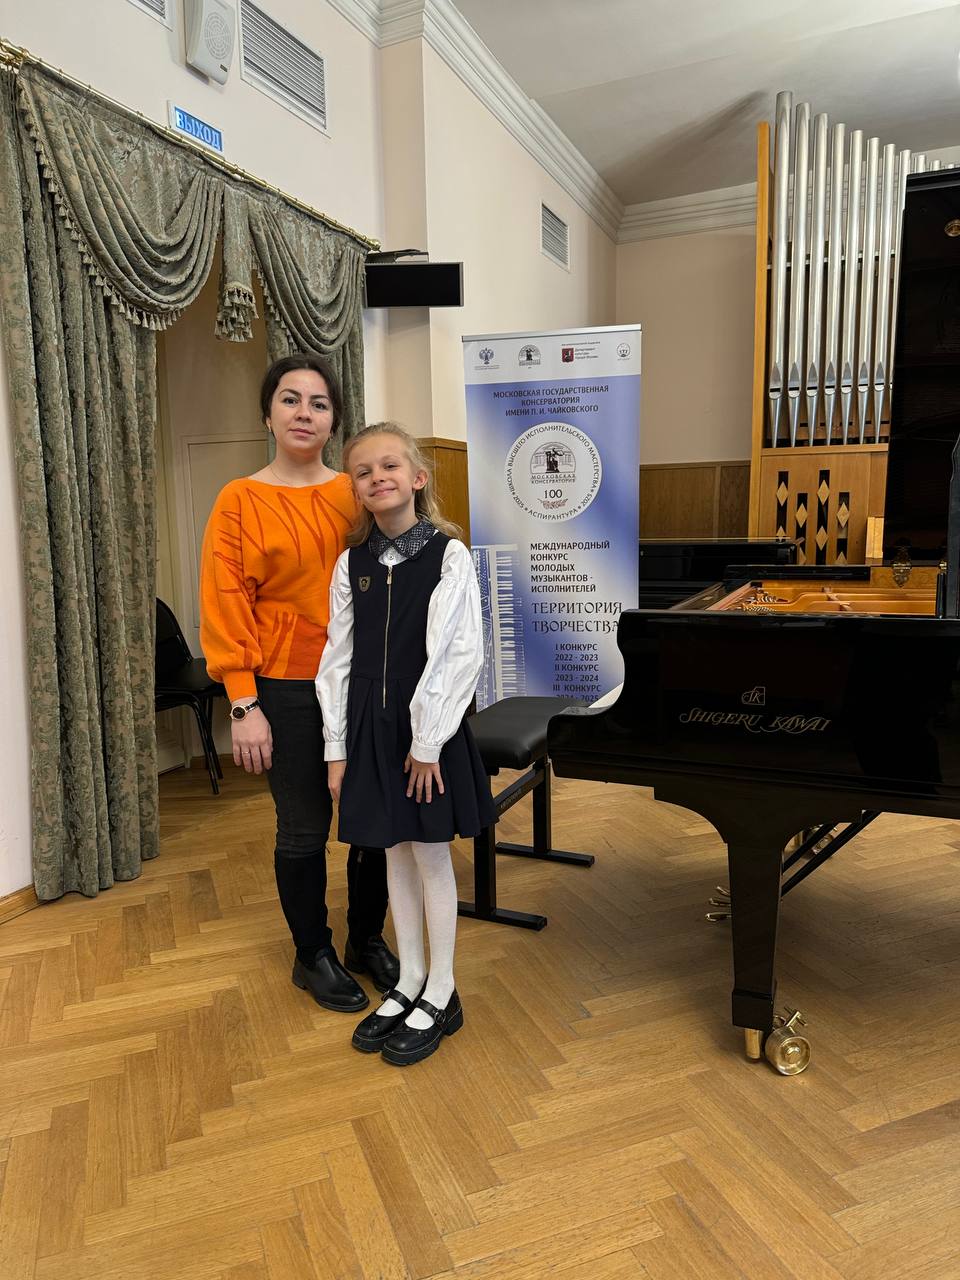 Поздравляем лауреата II степени II Международного конкурса молодых музыкантов-исполнителей «Территория творчества» Соловьёву Дарью!